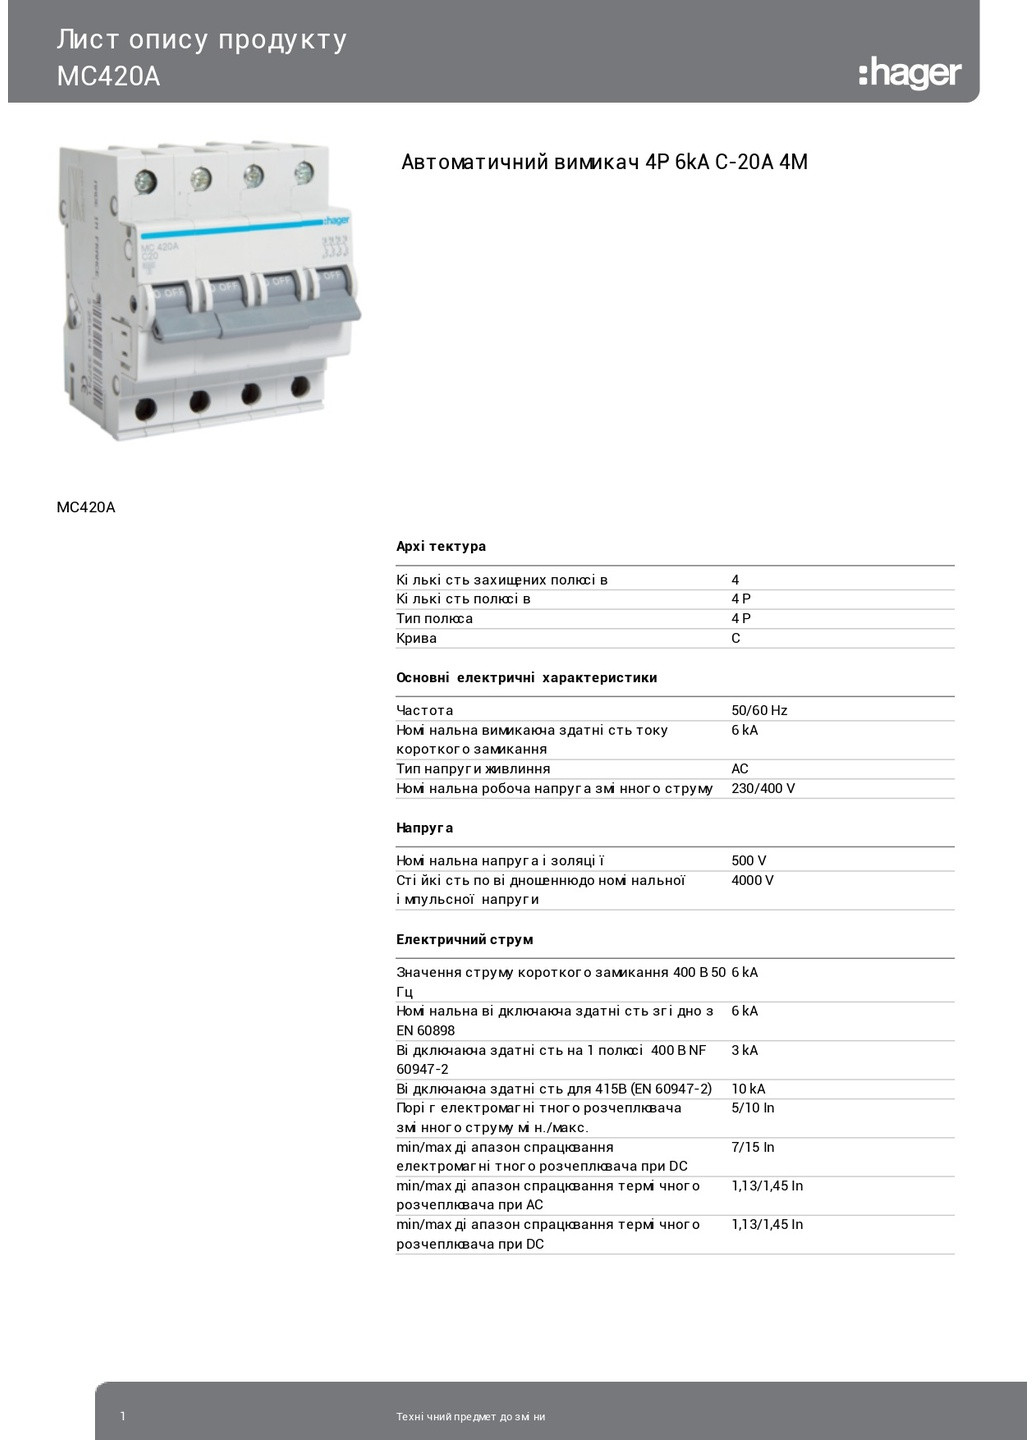 Вводный автомат четырехполюсный 20А автоматический выключатель MC420A 4P 6kA C20A 4M (3842) Hager (265535505)